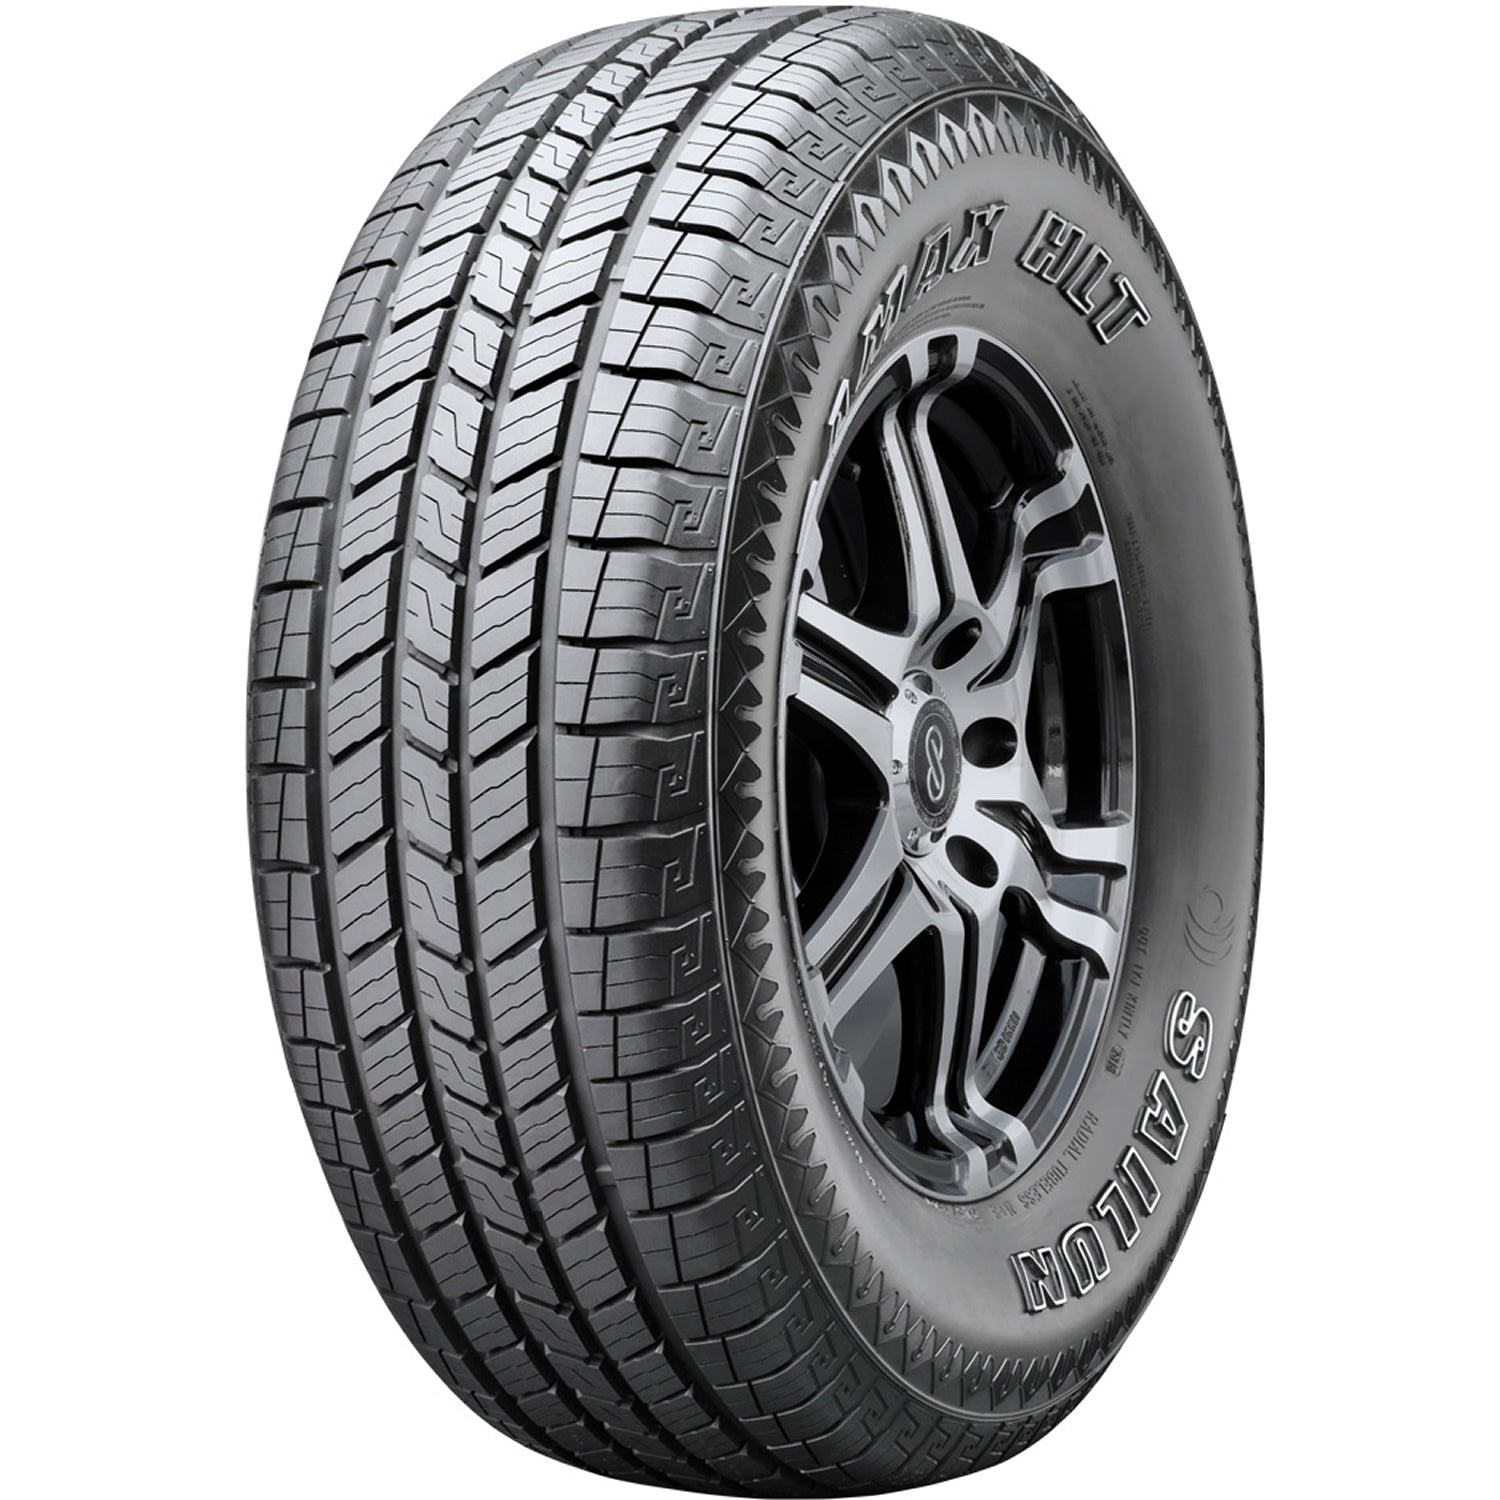 SAILUN TERRAMAX HLT 245/60R18 (29.6X9.8R 18) Tires